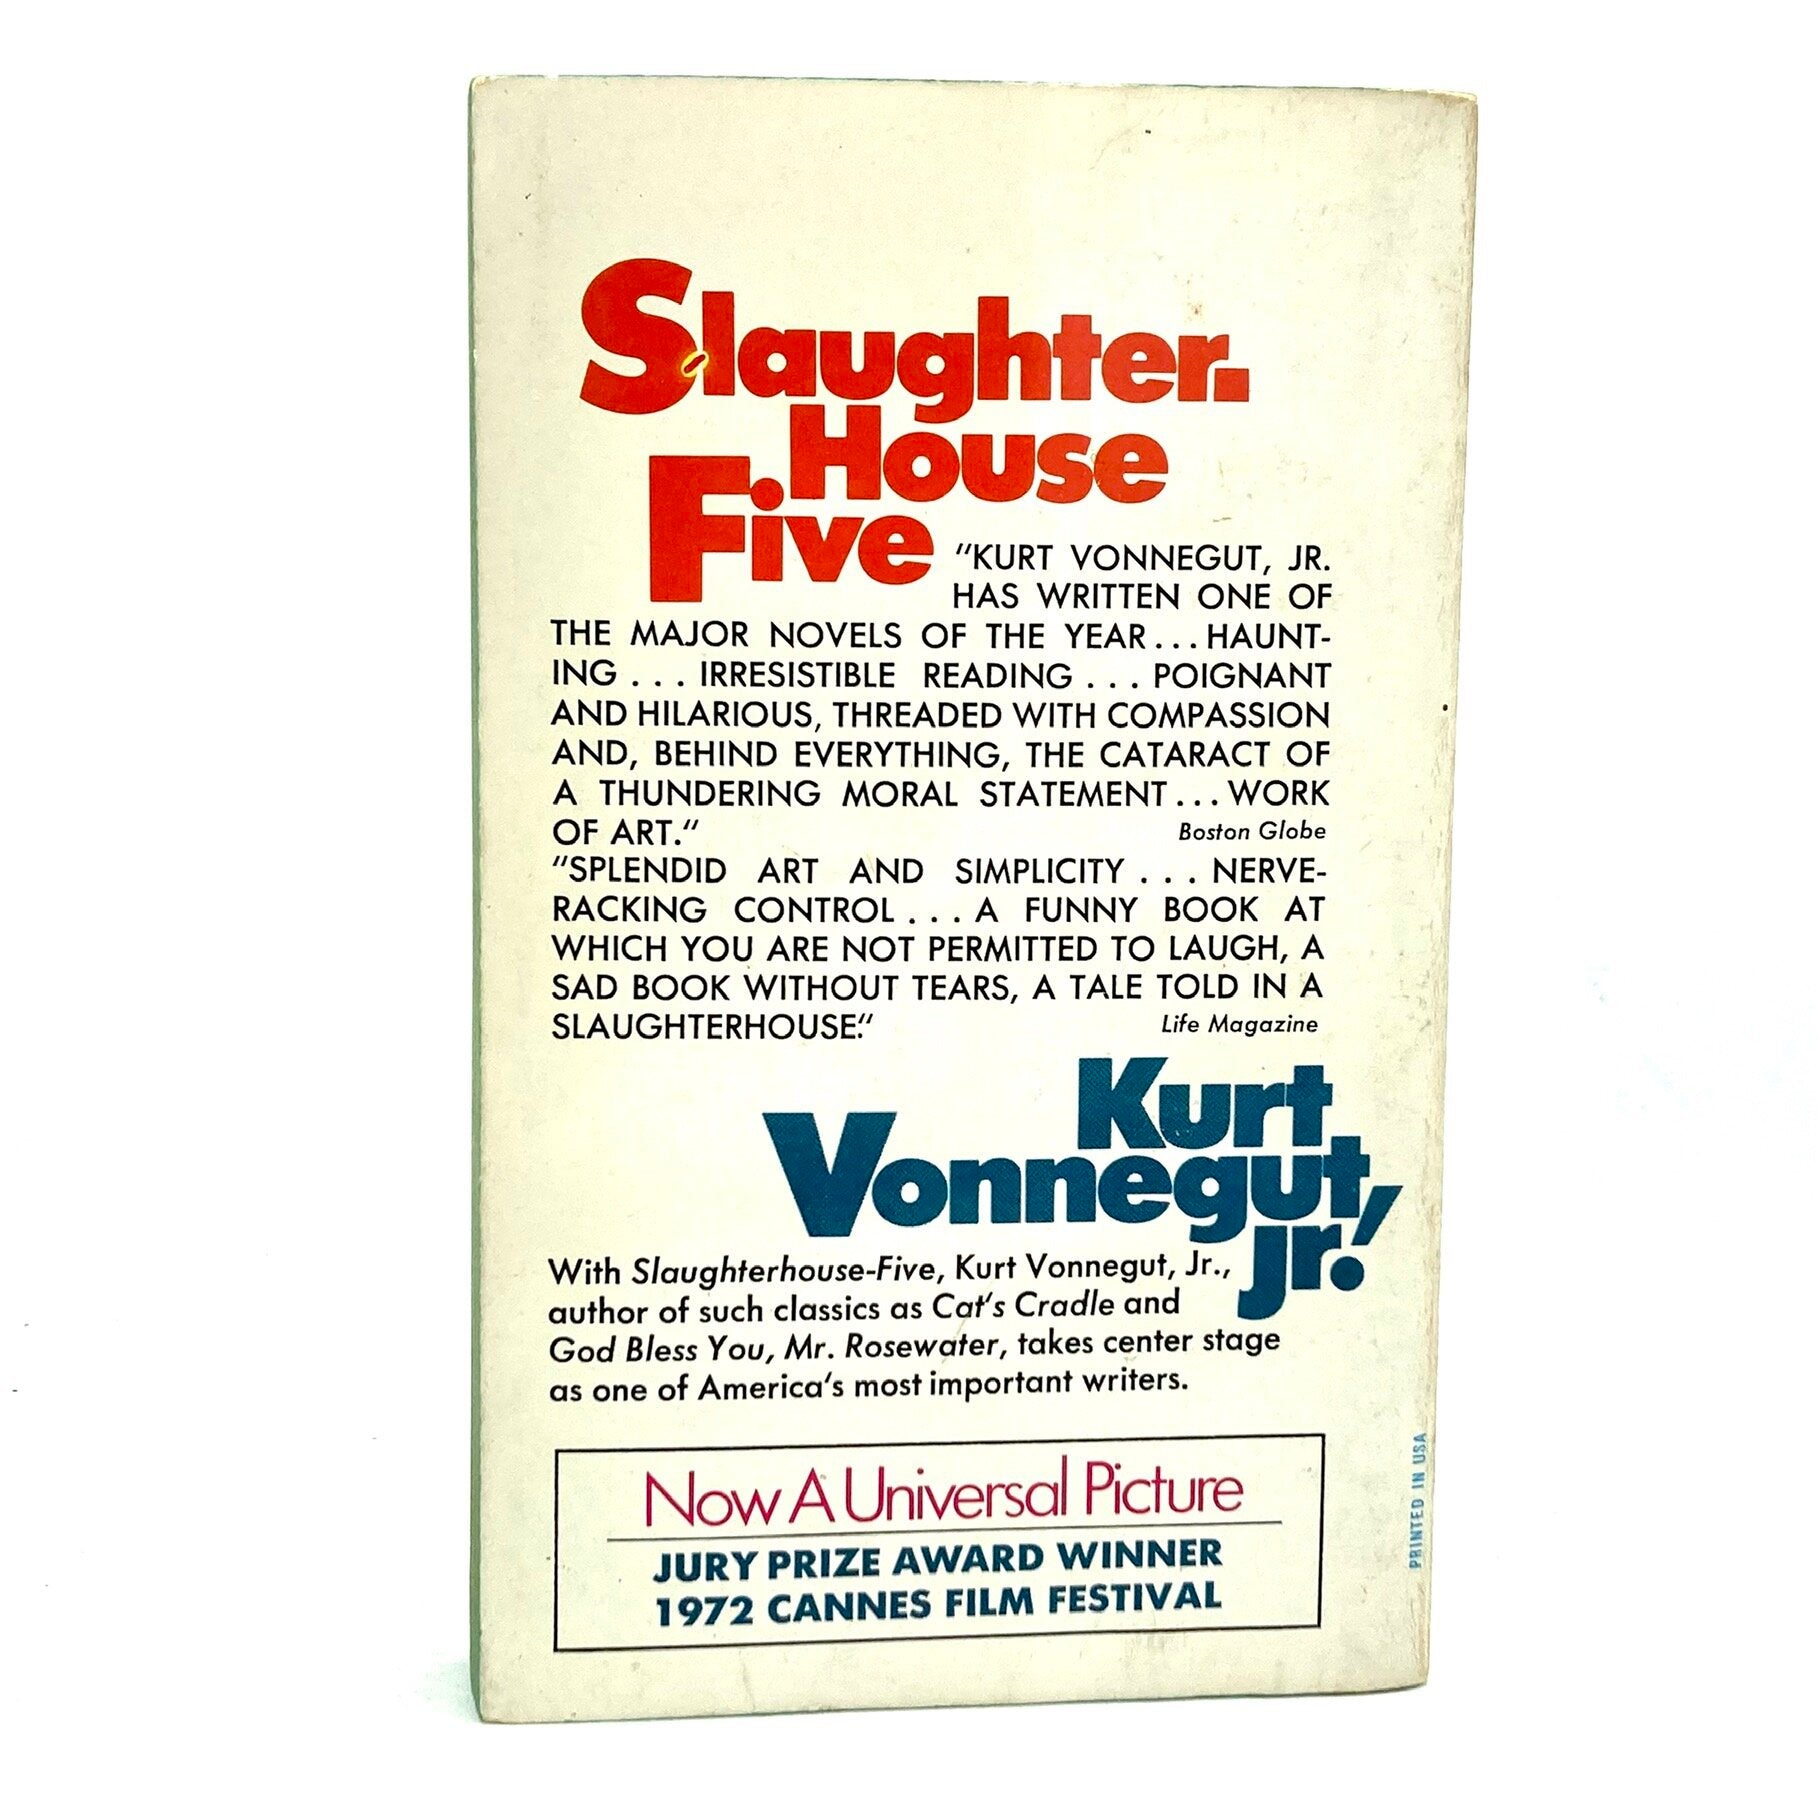 VONNEGUT, Kurt "Slaughter-House Five" [Dell, 1972] - Buzz Bookstore